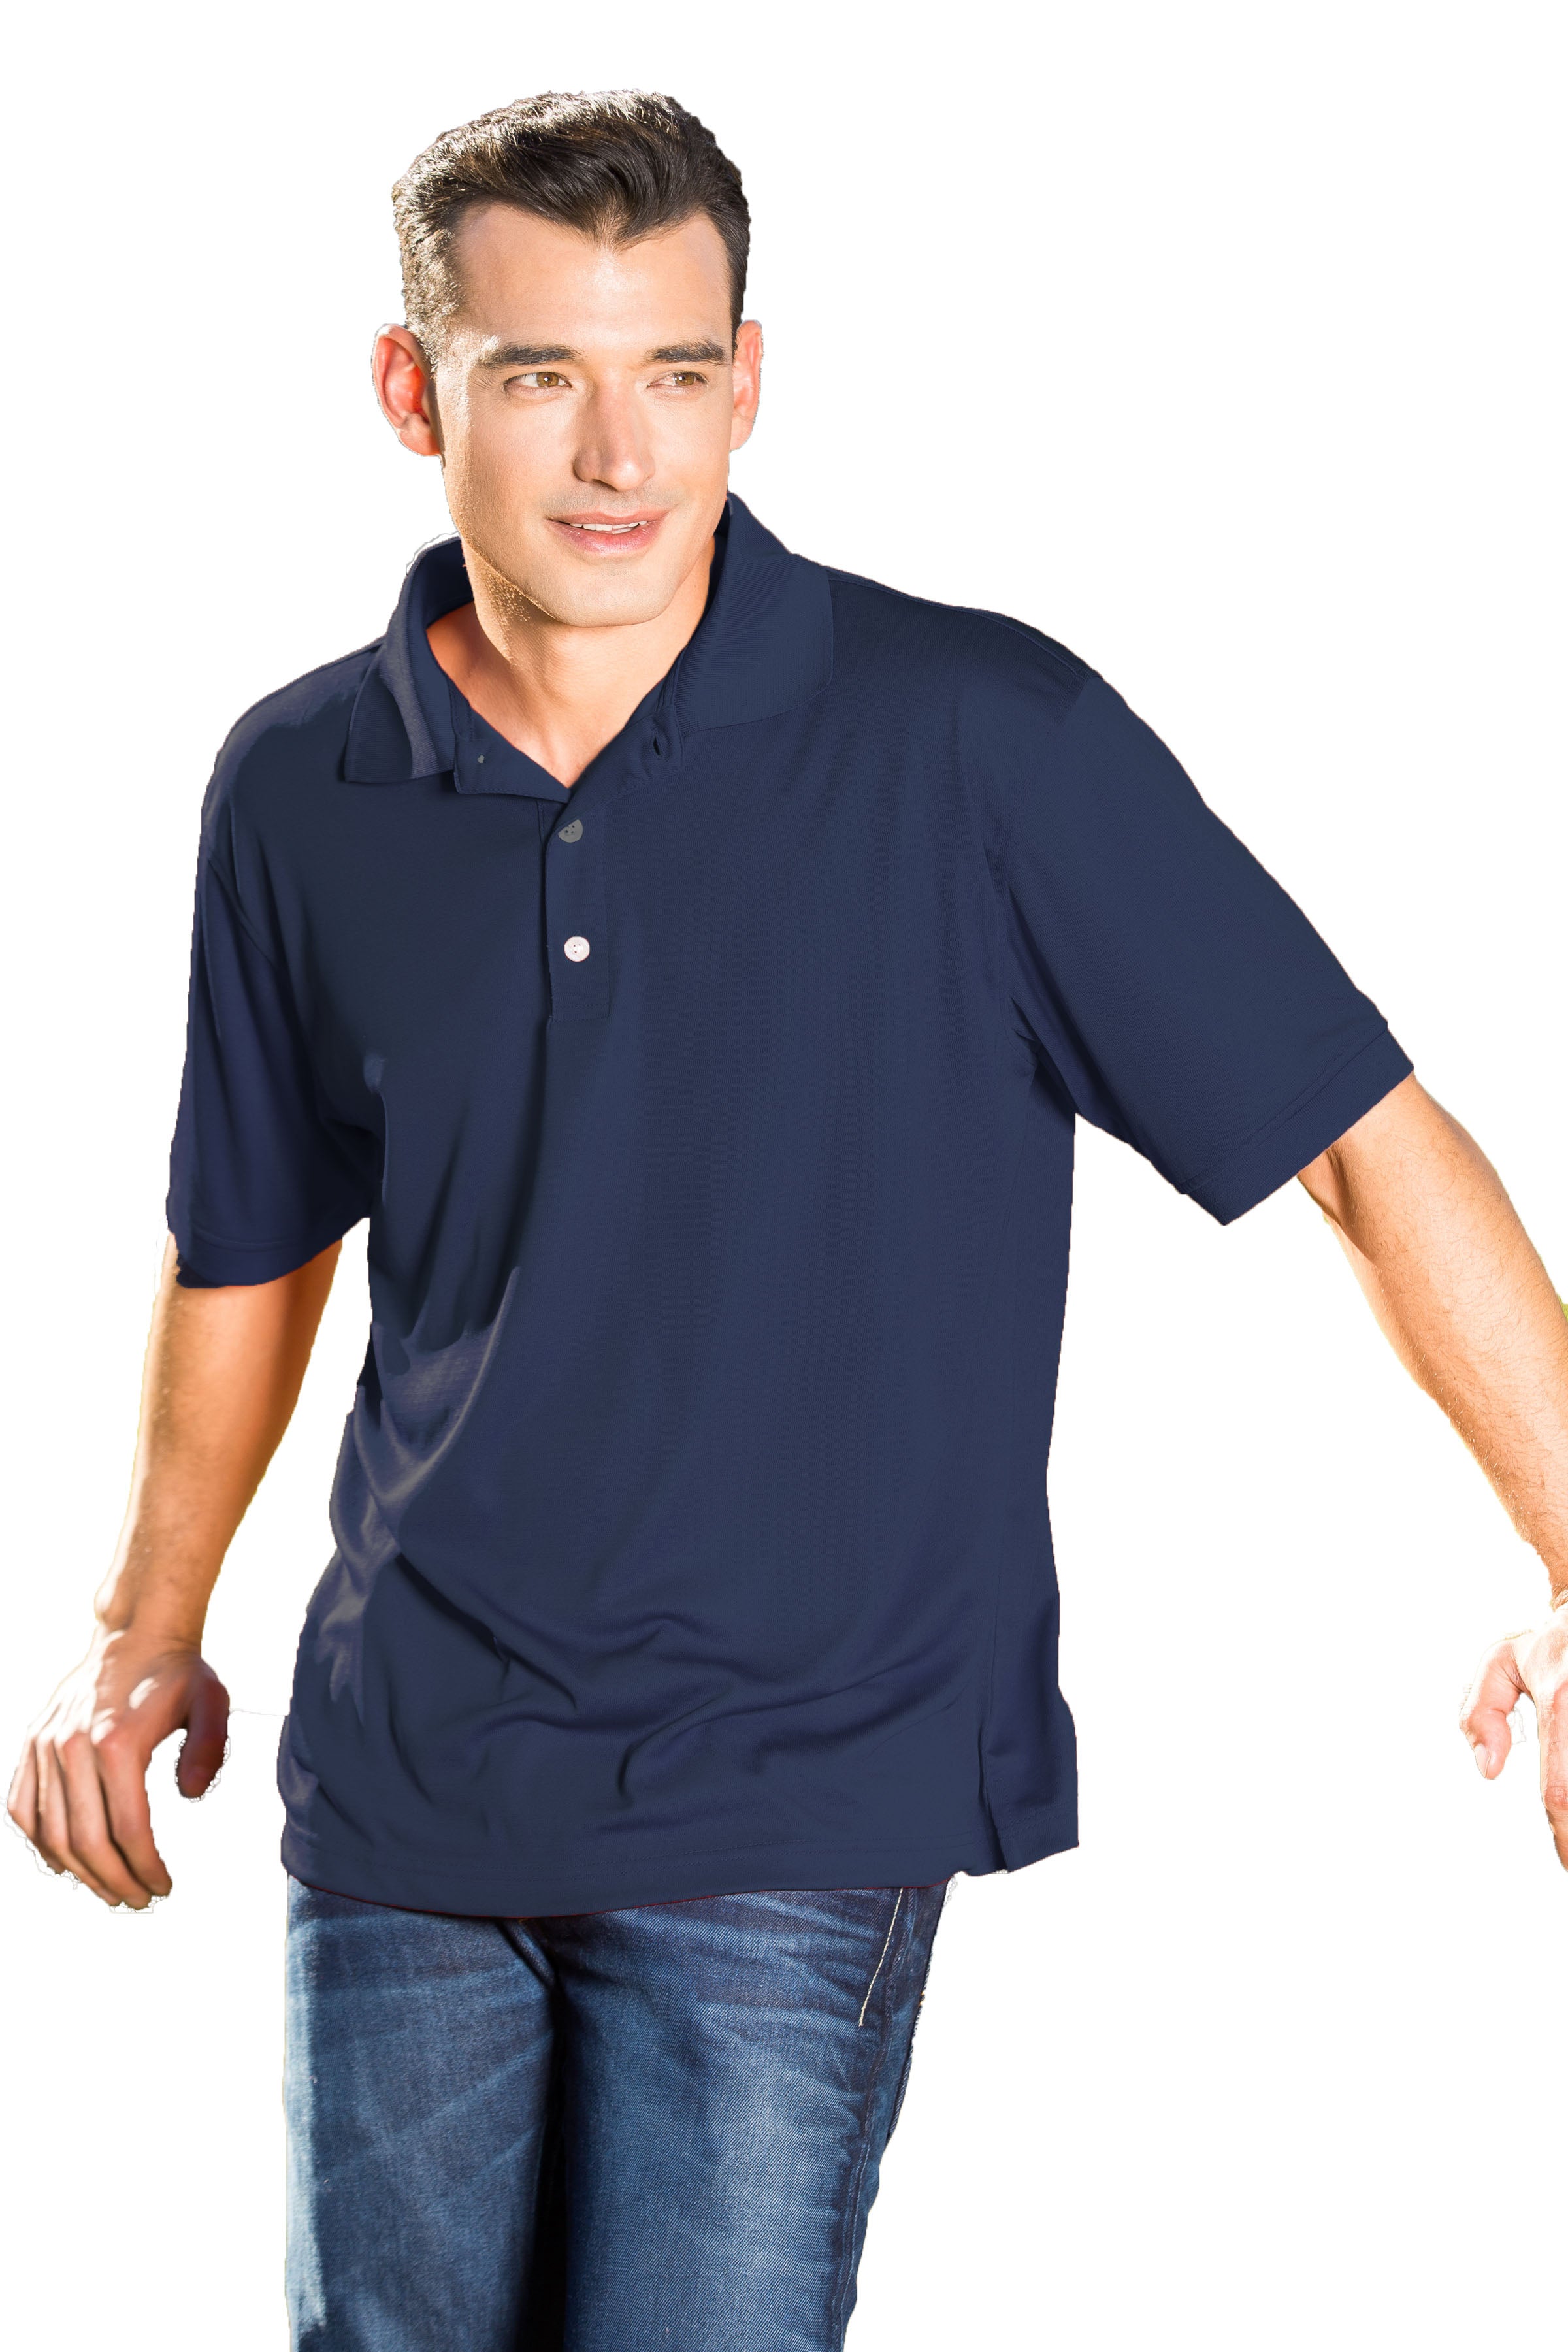 #121 Polyester Polo Shirt